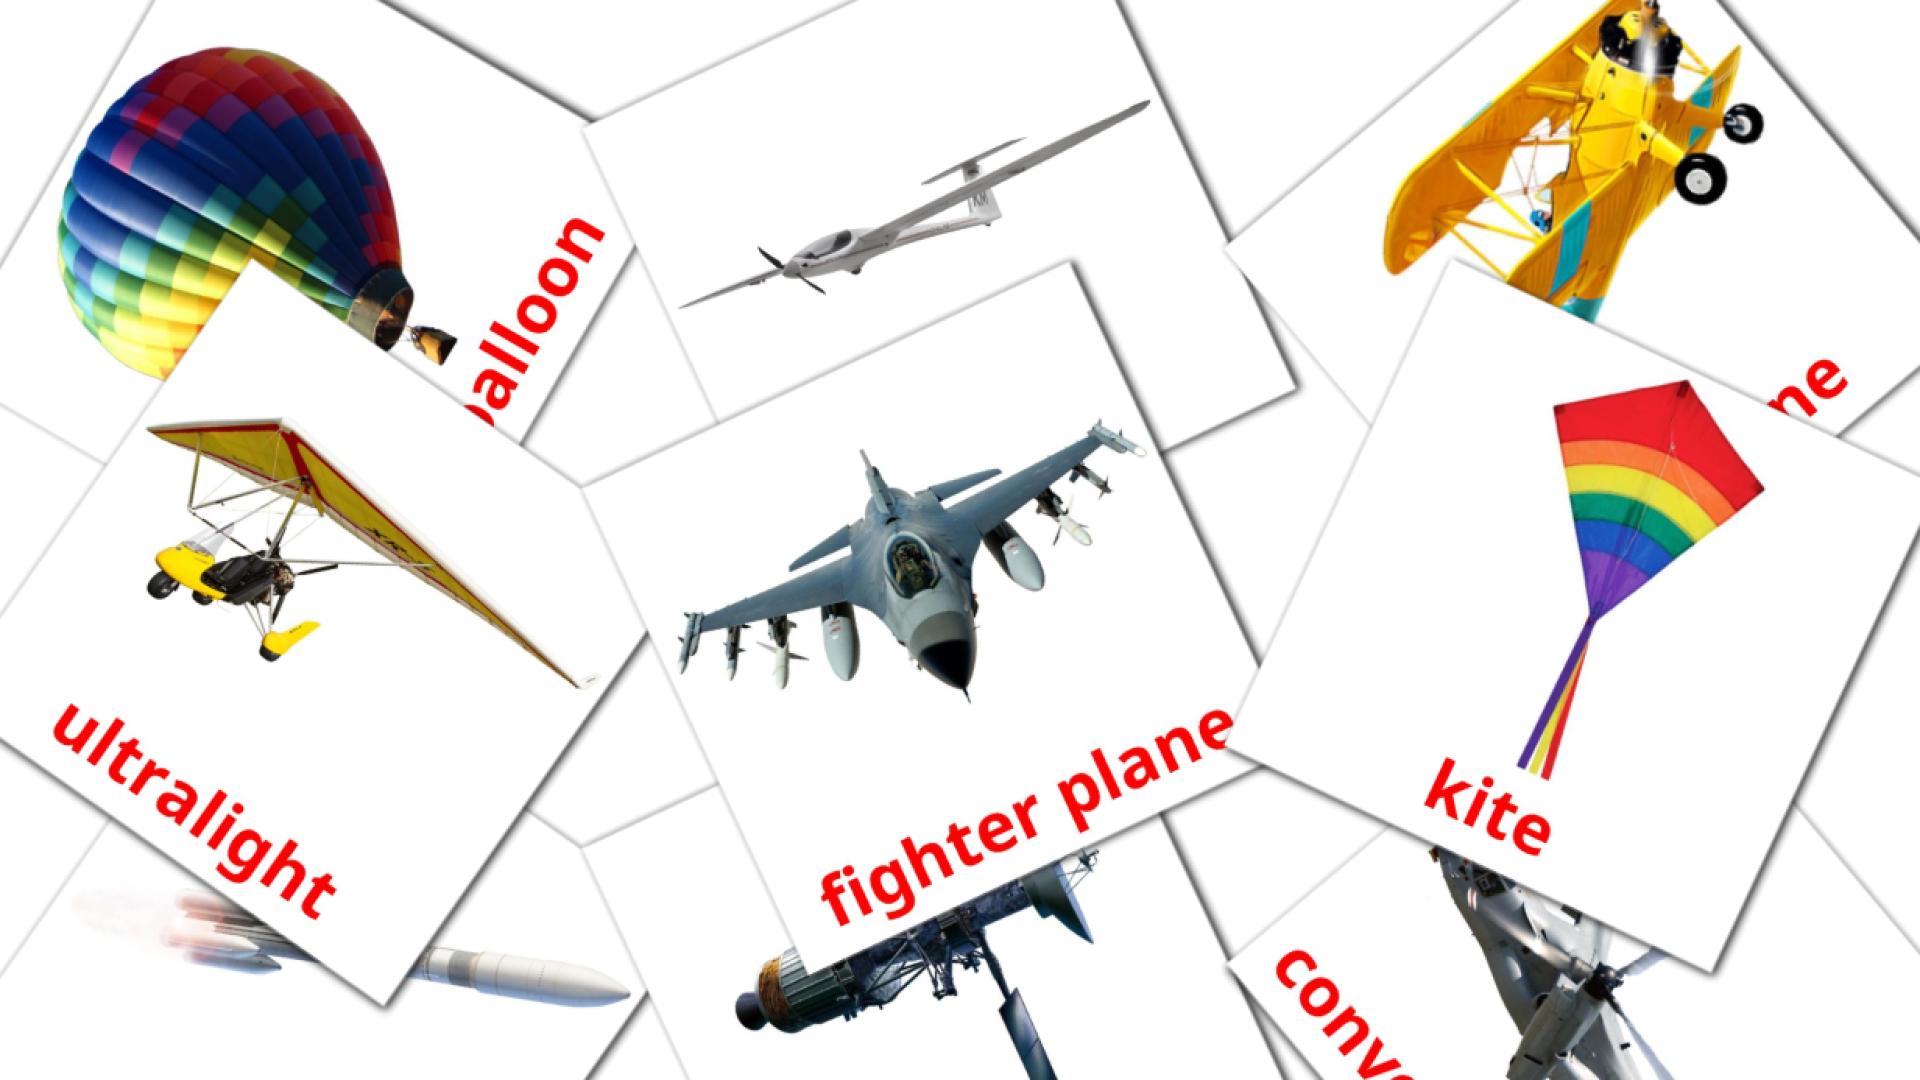 Bildkarten für Aircraft